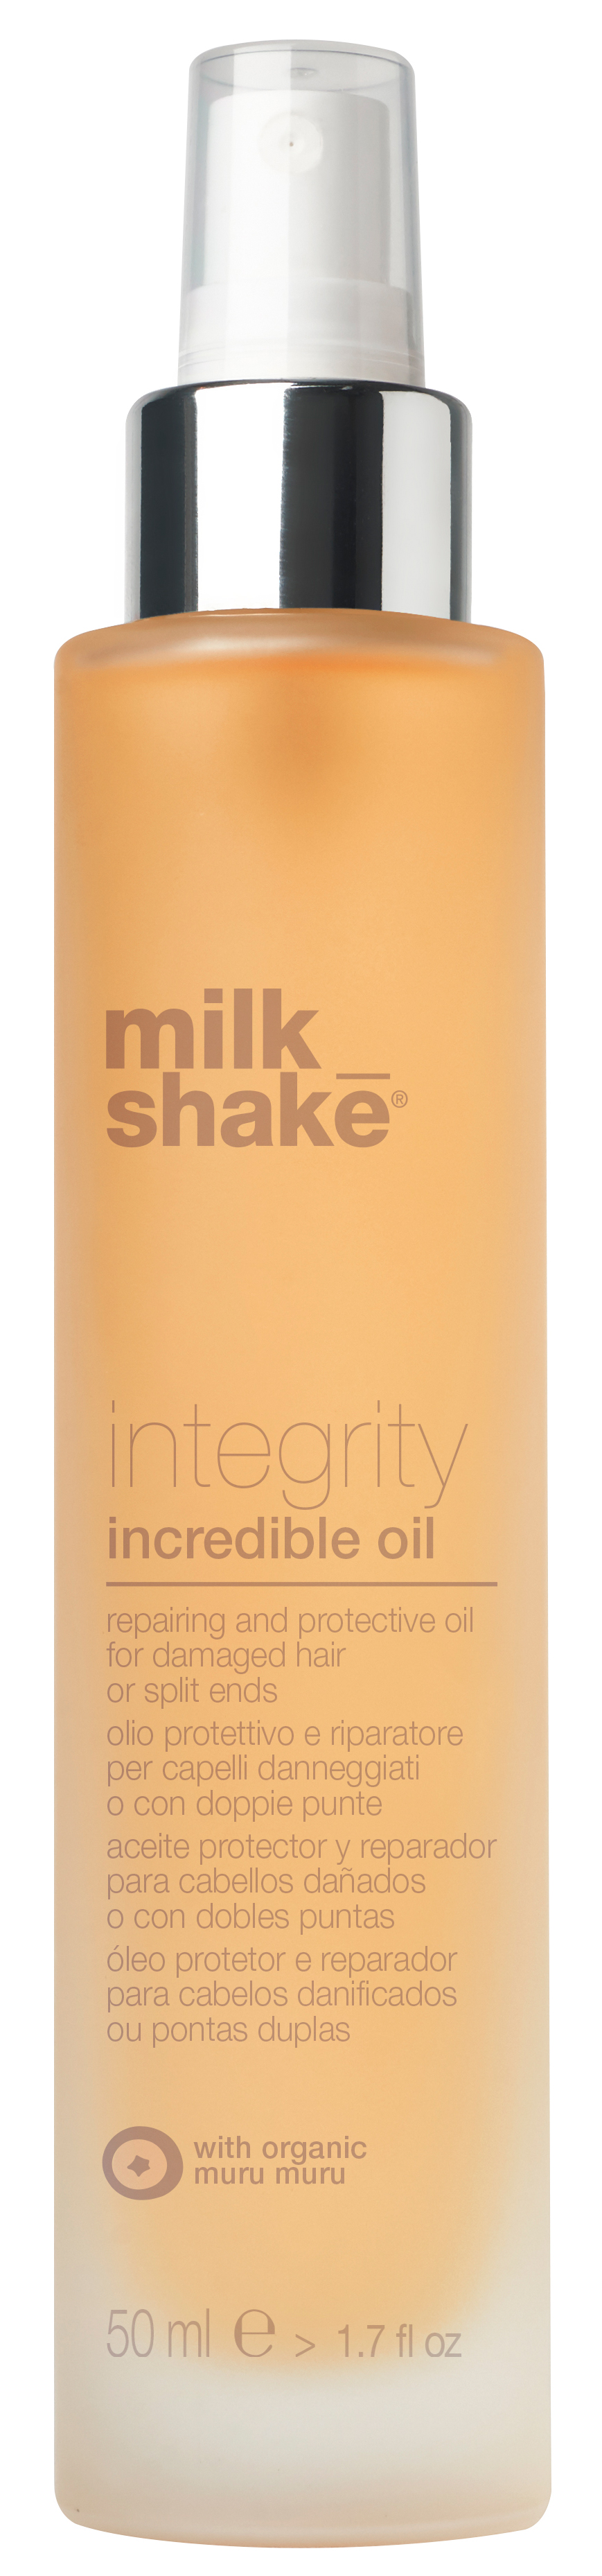 milk_shake - Integrity Incredible Oil 50 ml - Skjønnhet